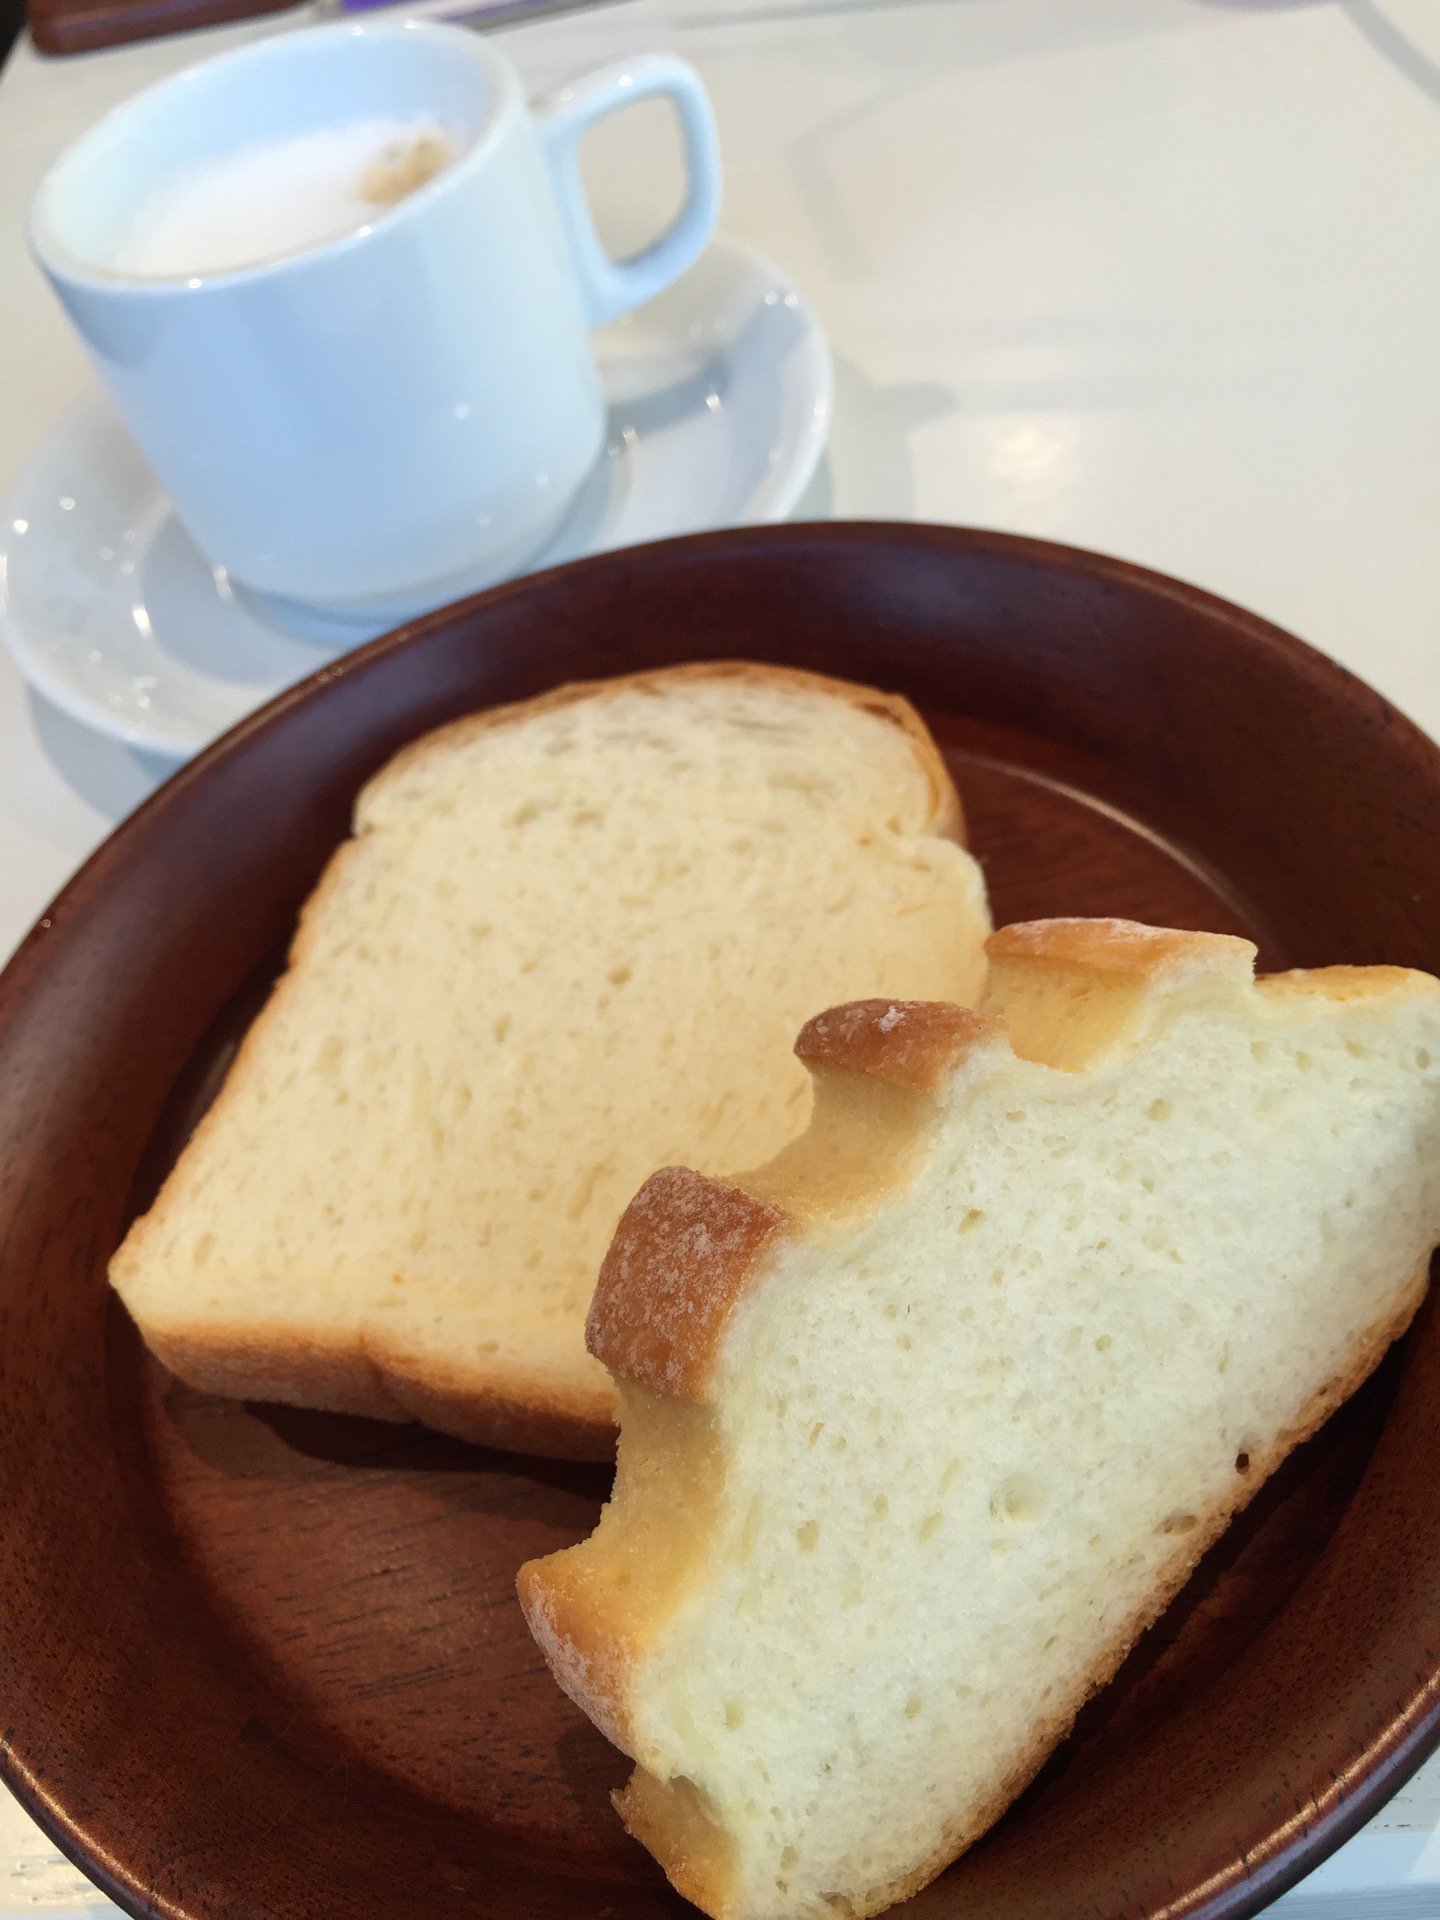 塩ミルクハースパンと蜂蜜パンとカプチーノ。 (@ 健康レストランAURA in 佐世保市, 長崎県) https://t.co/0iMZbjEIWL https://t.co/mNwamMSQ7M